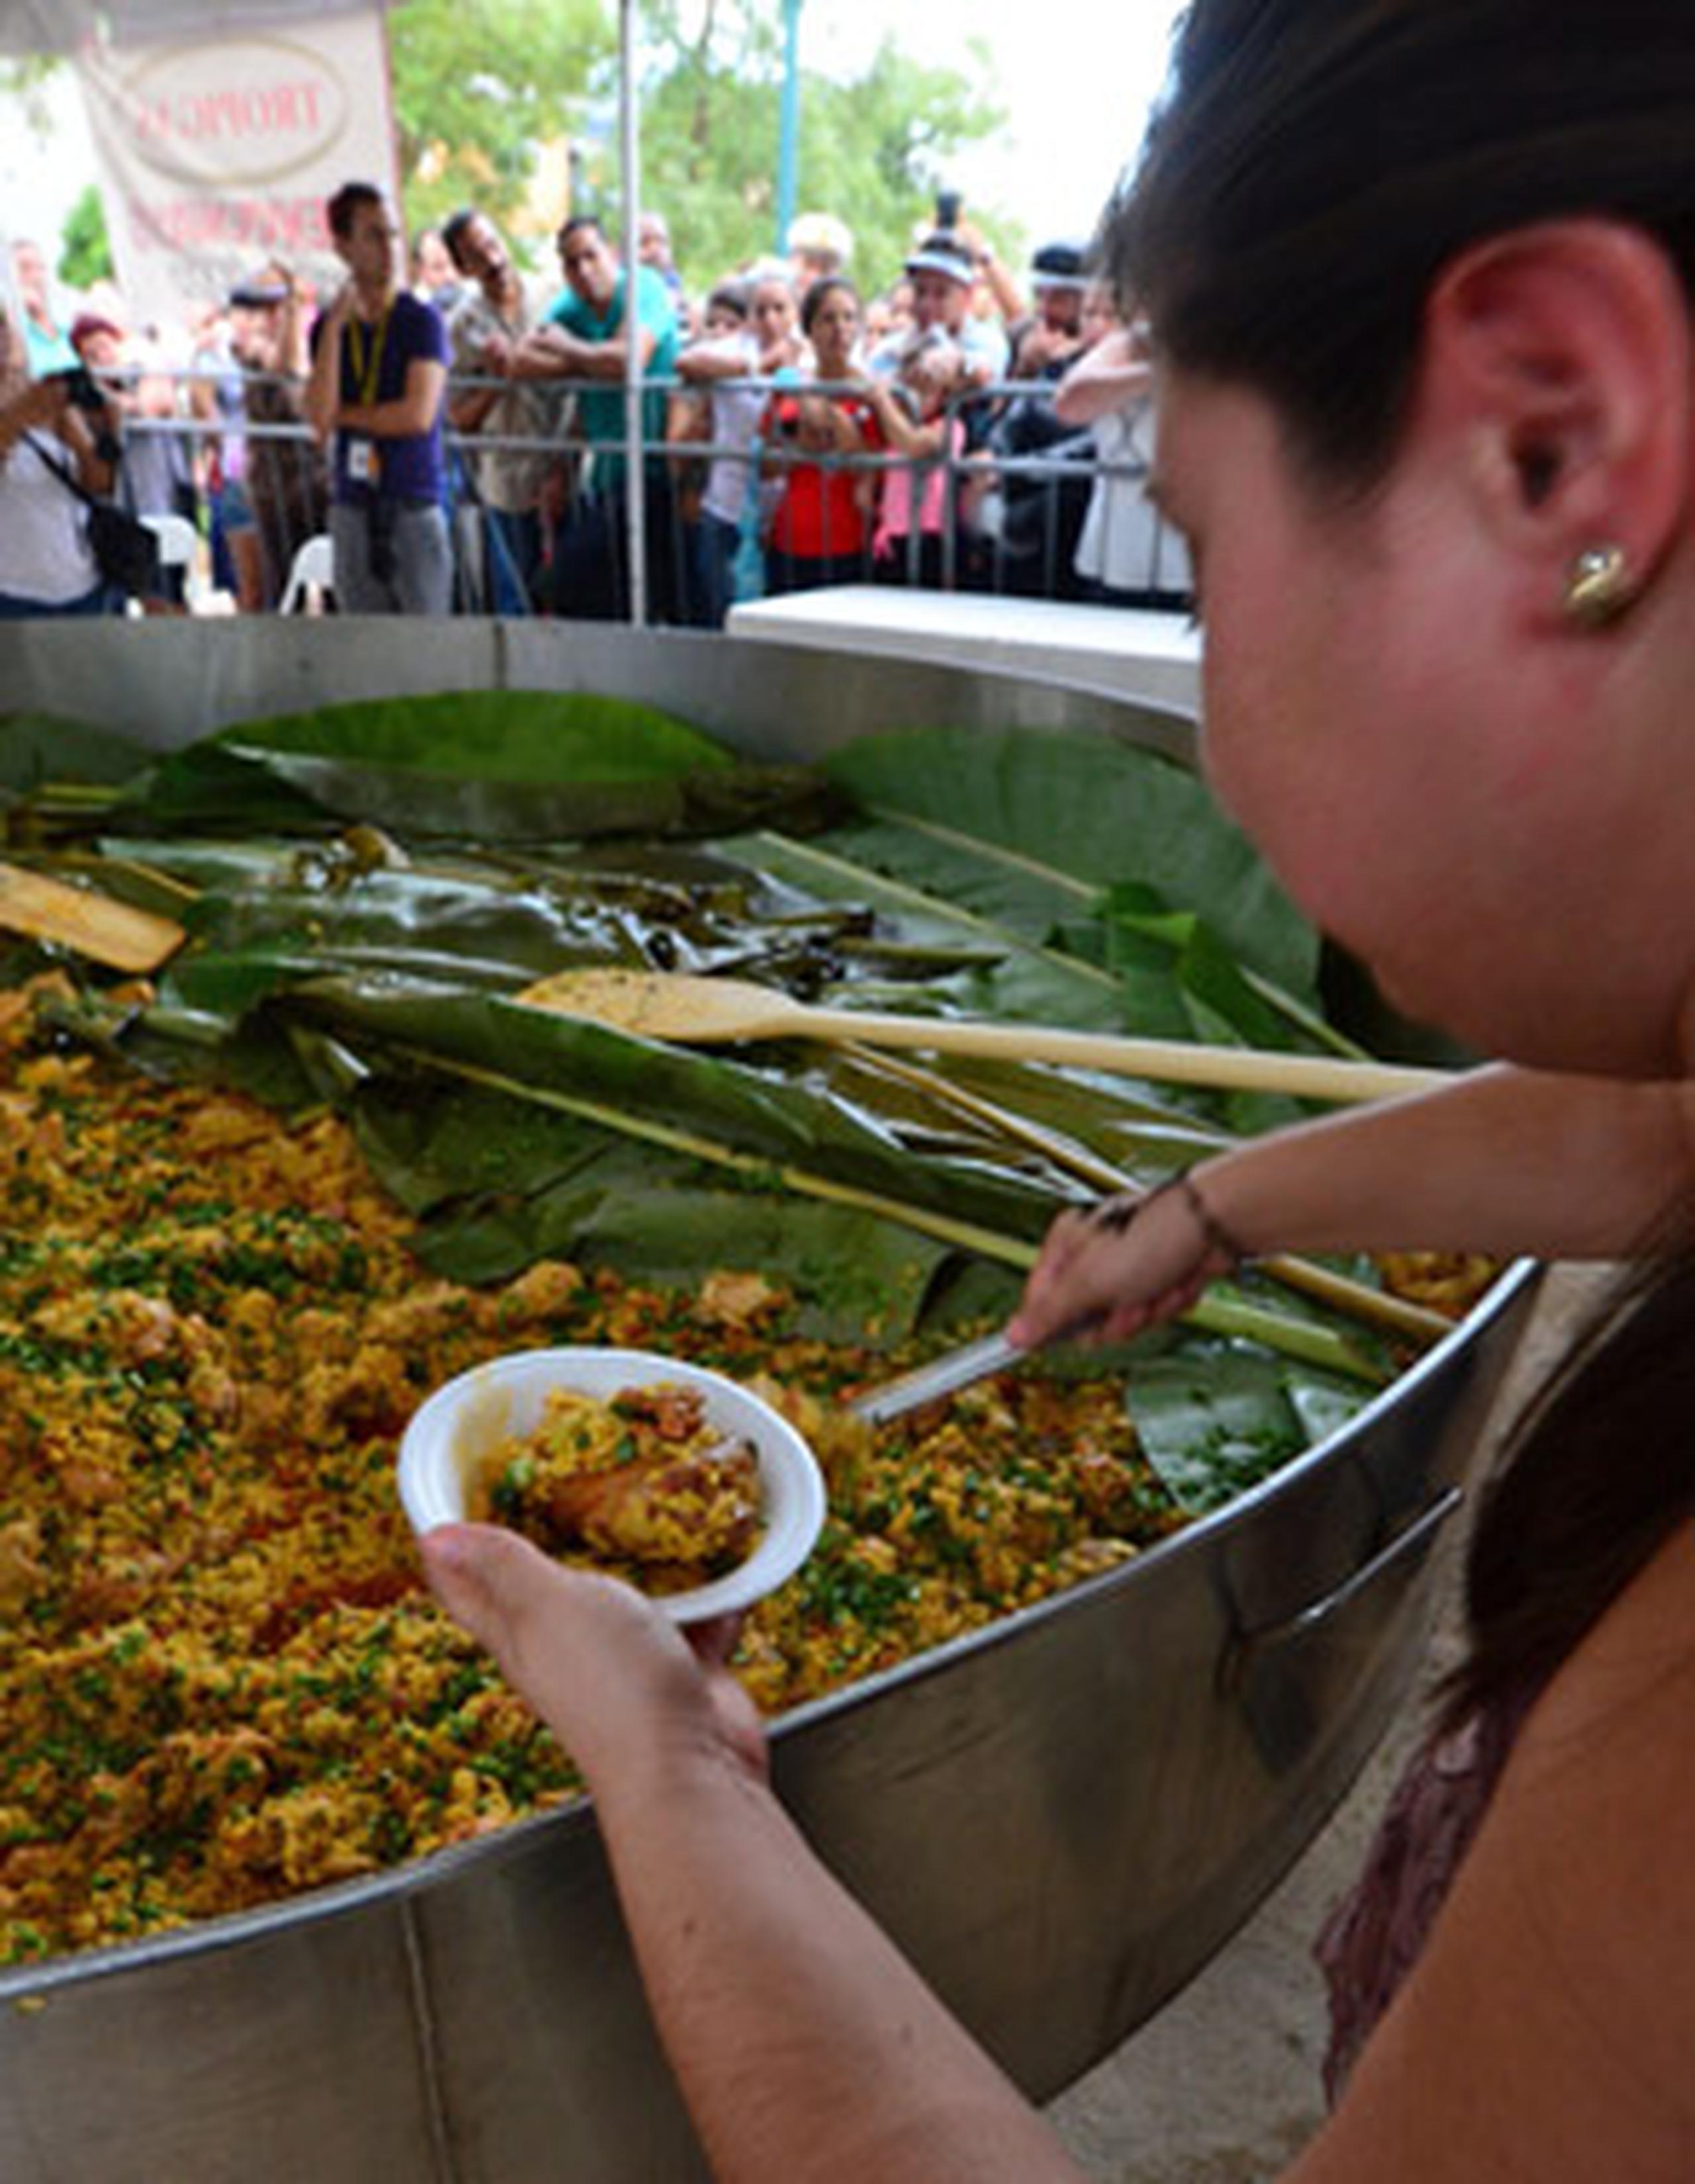 Durante el festival, podrás disfrutar de una gran variedad de exquisitas frituras y delicias. (Archivo)